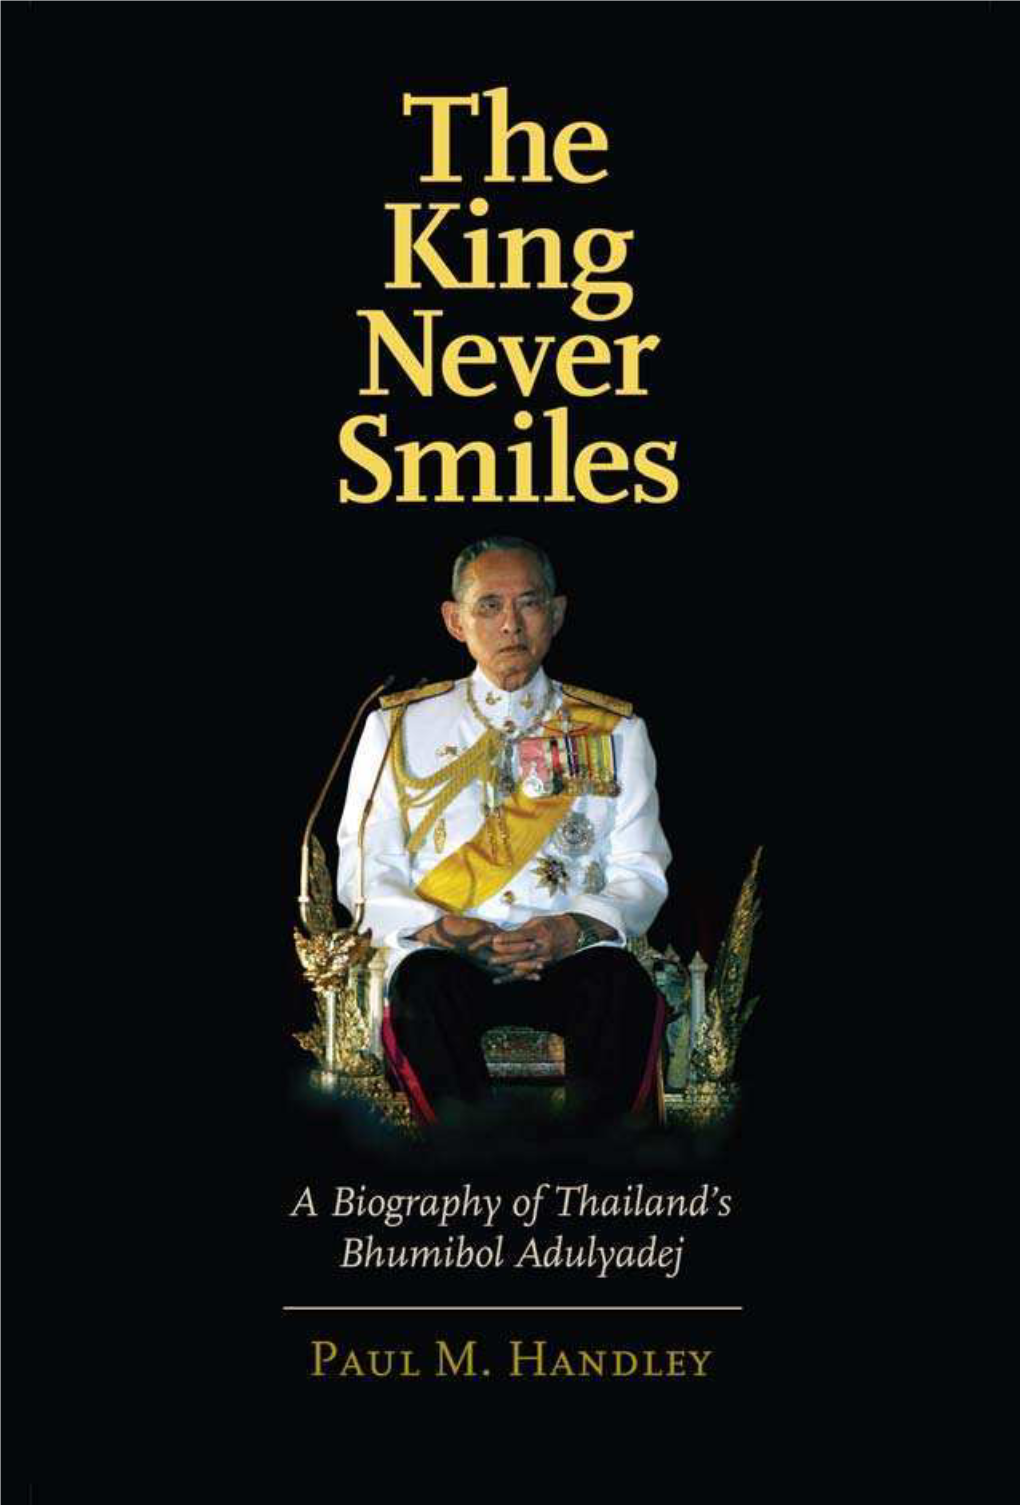 A Biography of Thailand's Bhumibol Adulyadej